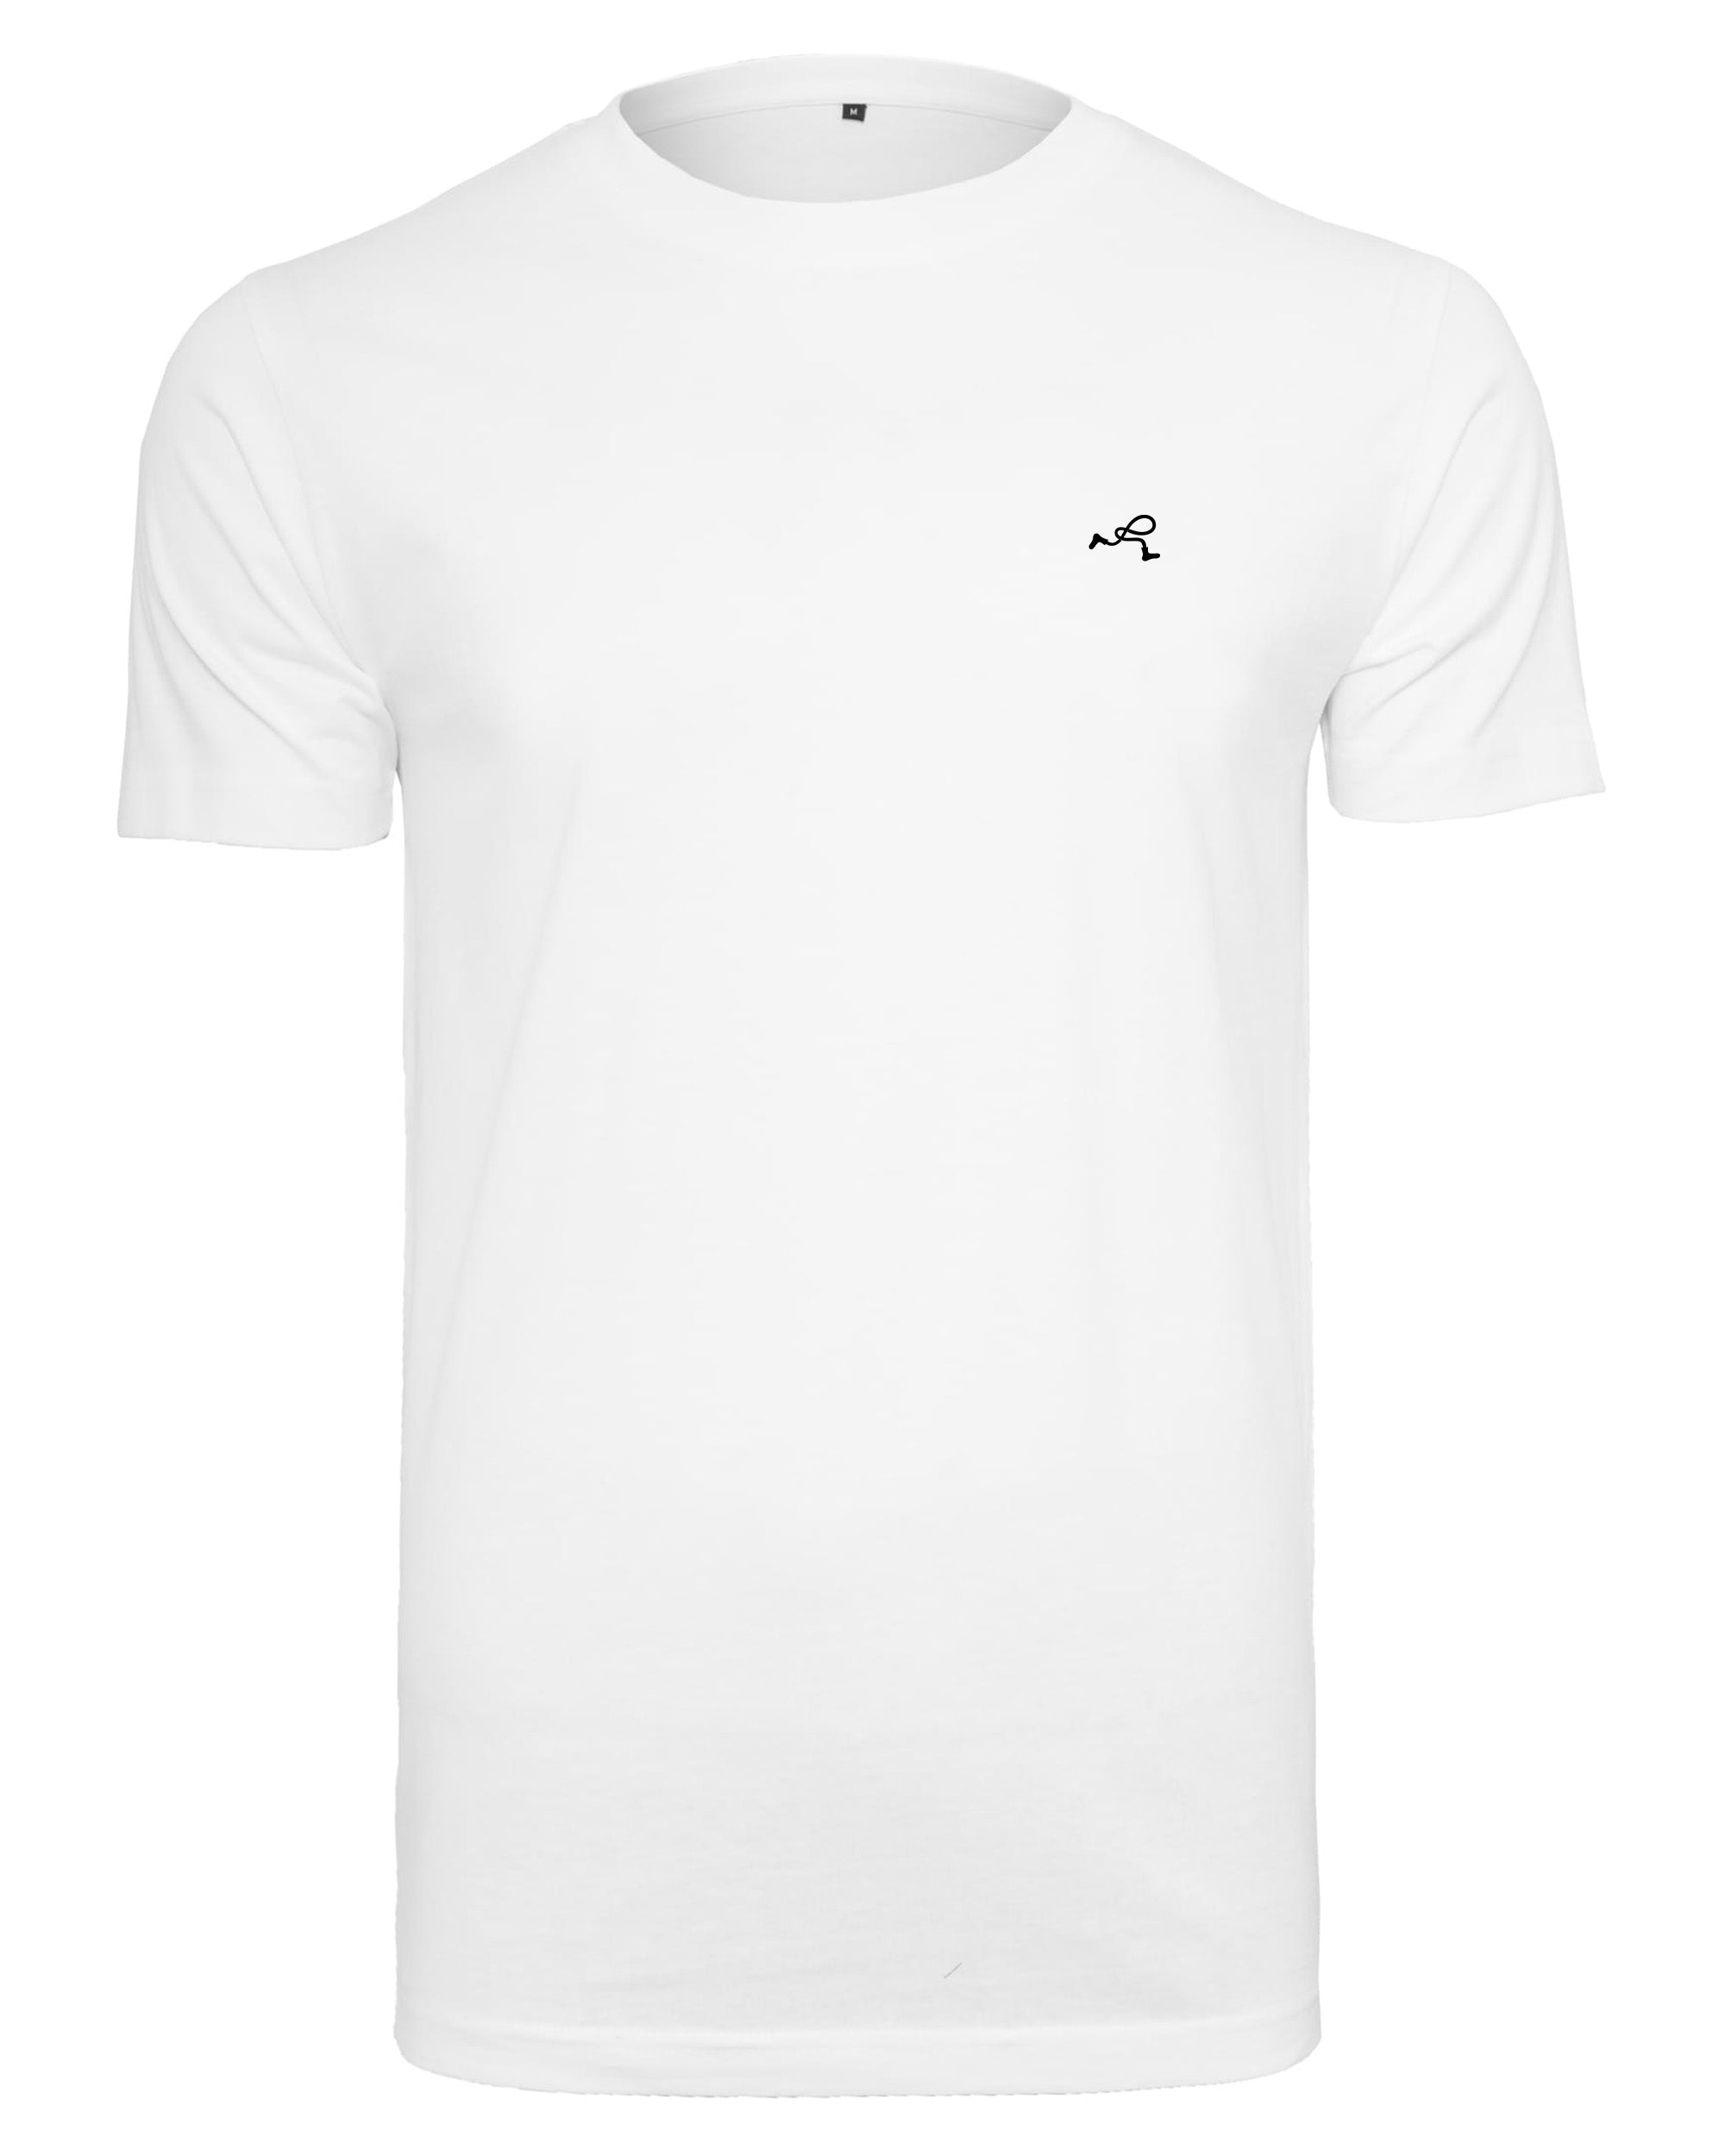 weißes basic T-Shirt von vorne mit kleinem schwarzen Rollo Socks Label auf der Brust